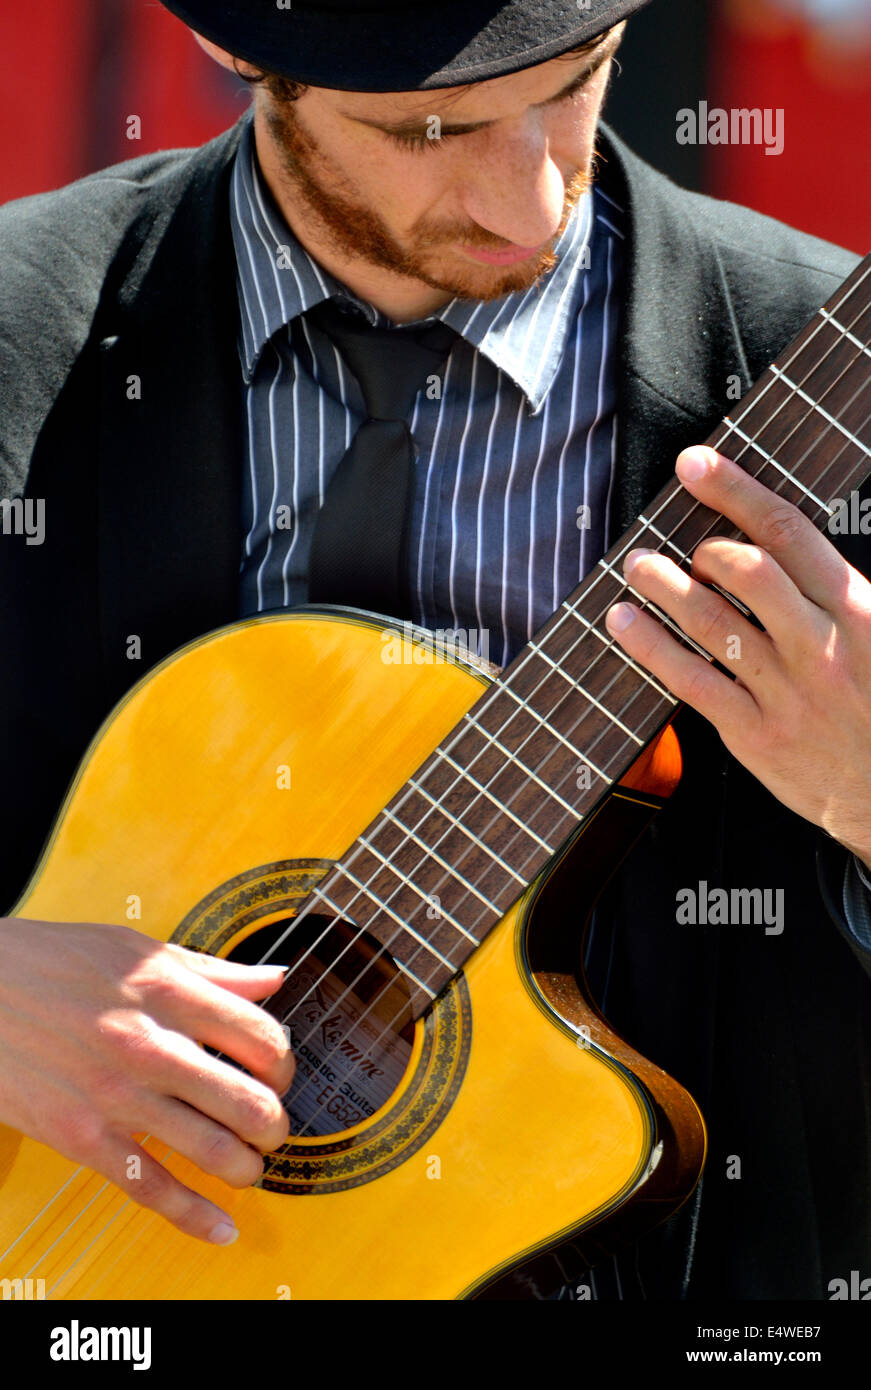 London, England, UK. Guitarist busking in Trafalgar Square Stock Photo